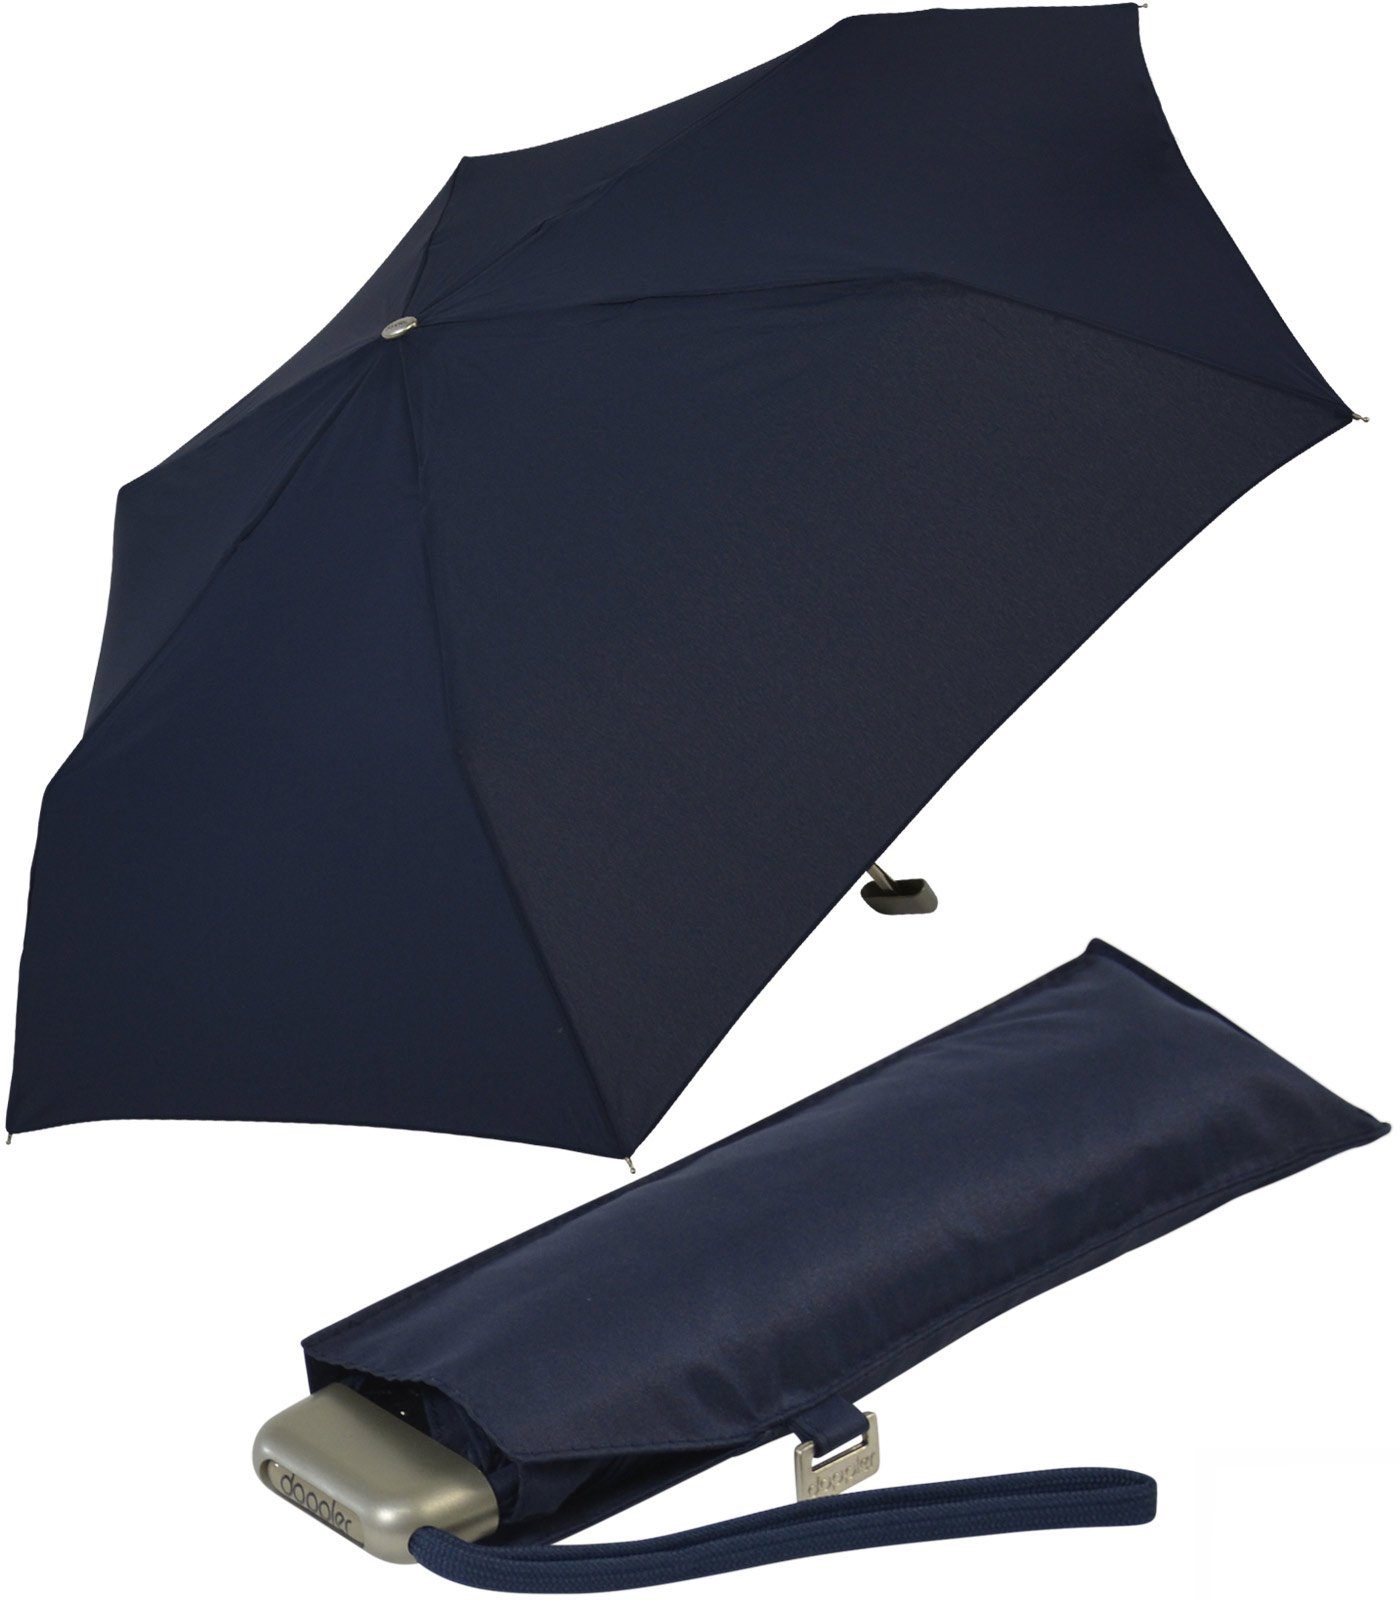 doppler® Langregenschirm ein leichter und flacher Schirm für jede Tasche, dieser treue Begleiter findet überall Platz navy | Stockschirme